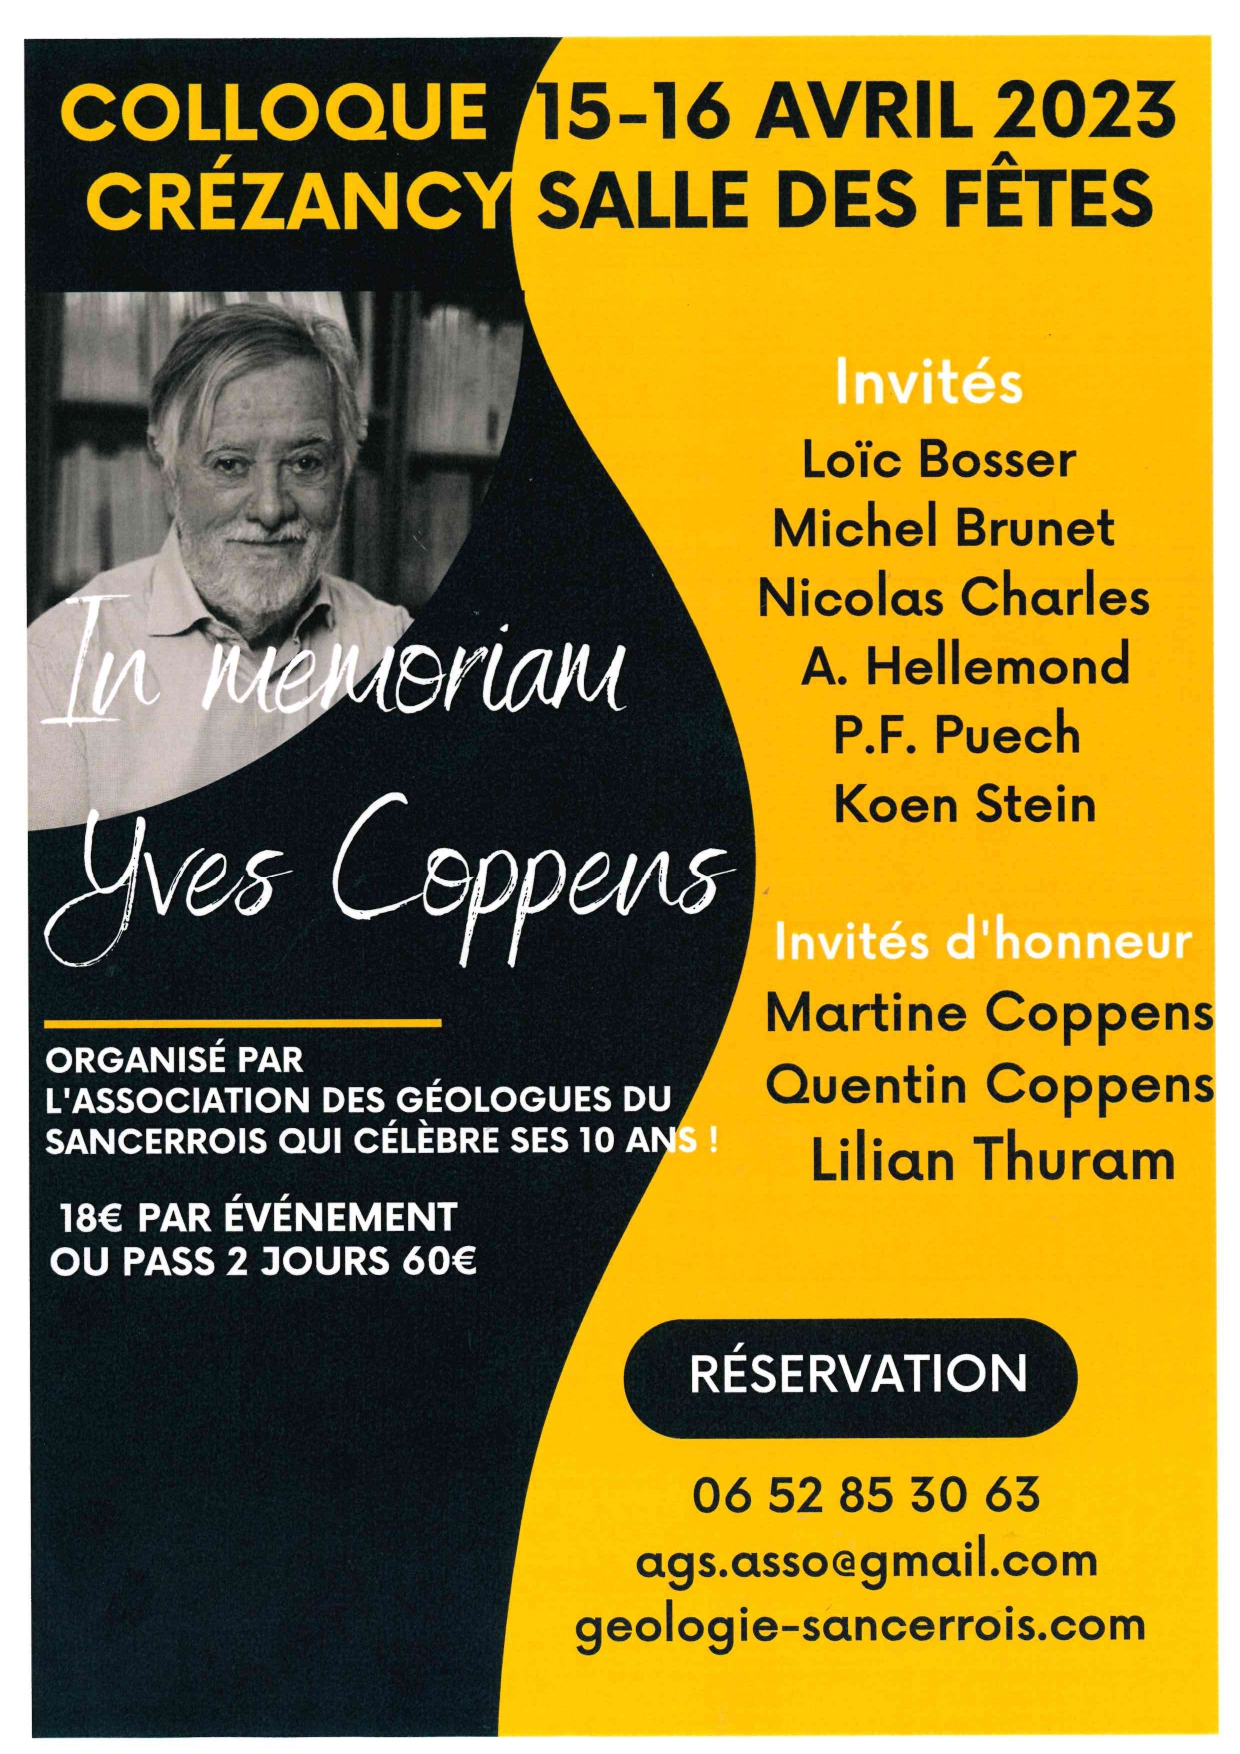 IN MEMORIAM YVES COPPENS : Nos souvenirs de Yves Coppens©